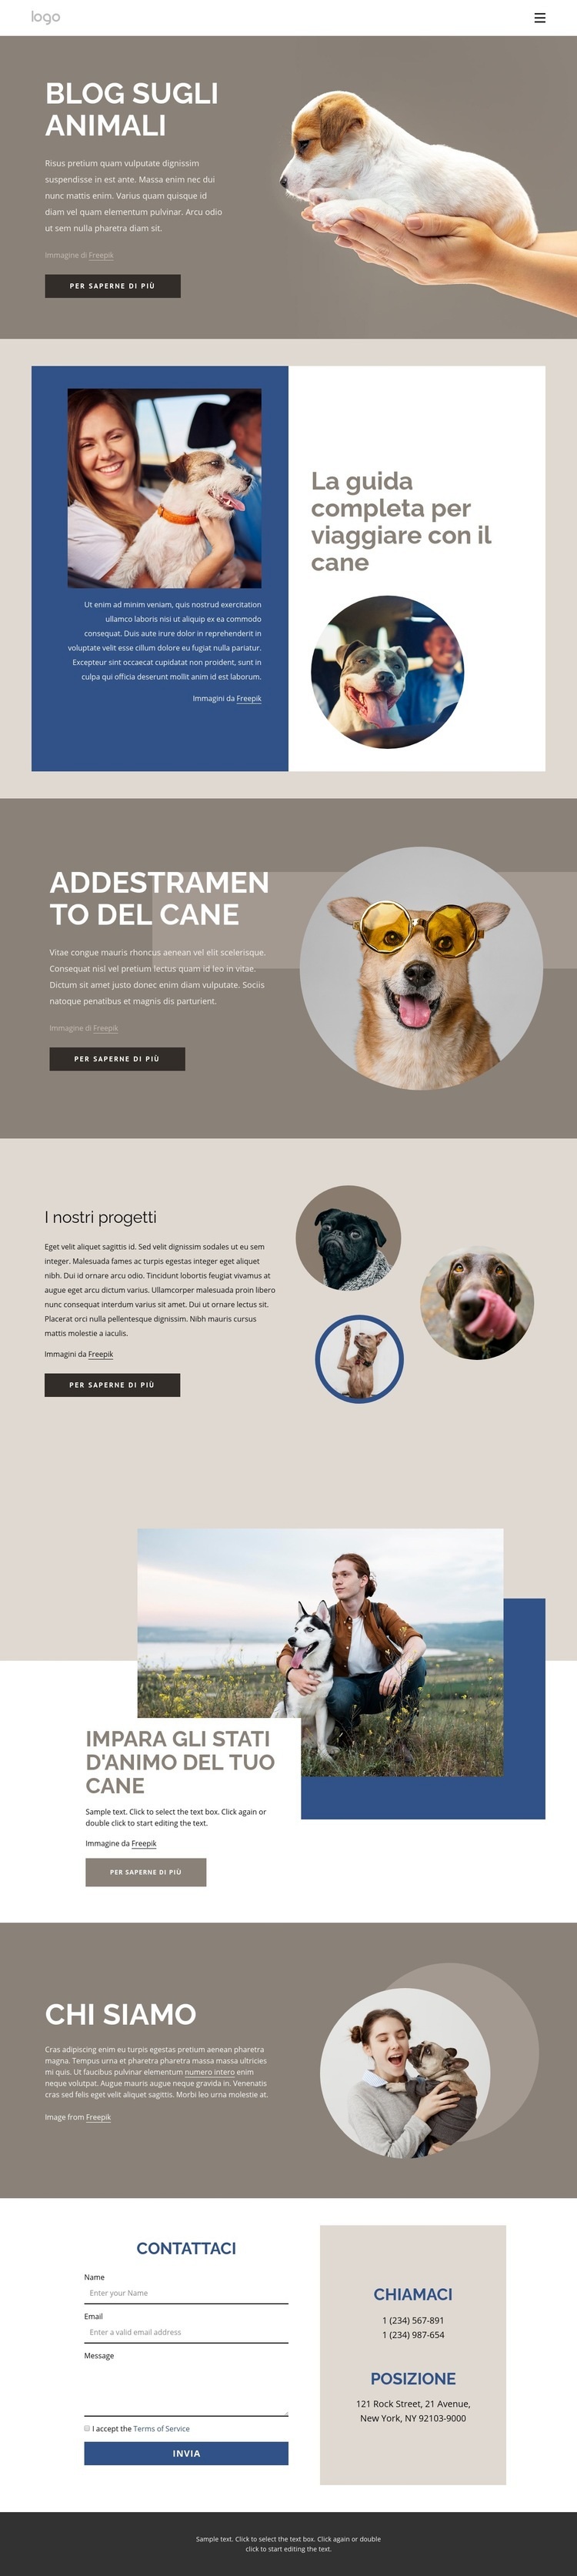 Blog sugli animali domestici Costruttore di siti web HTML